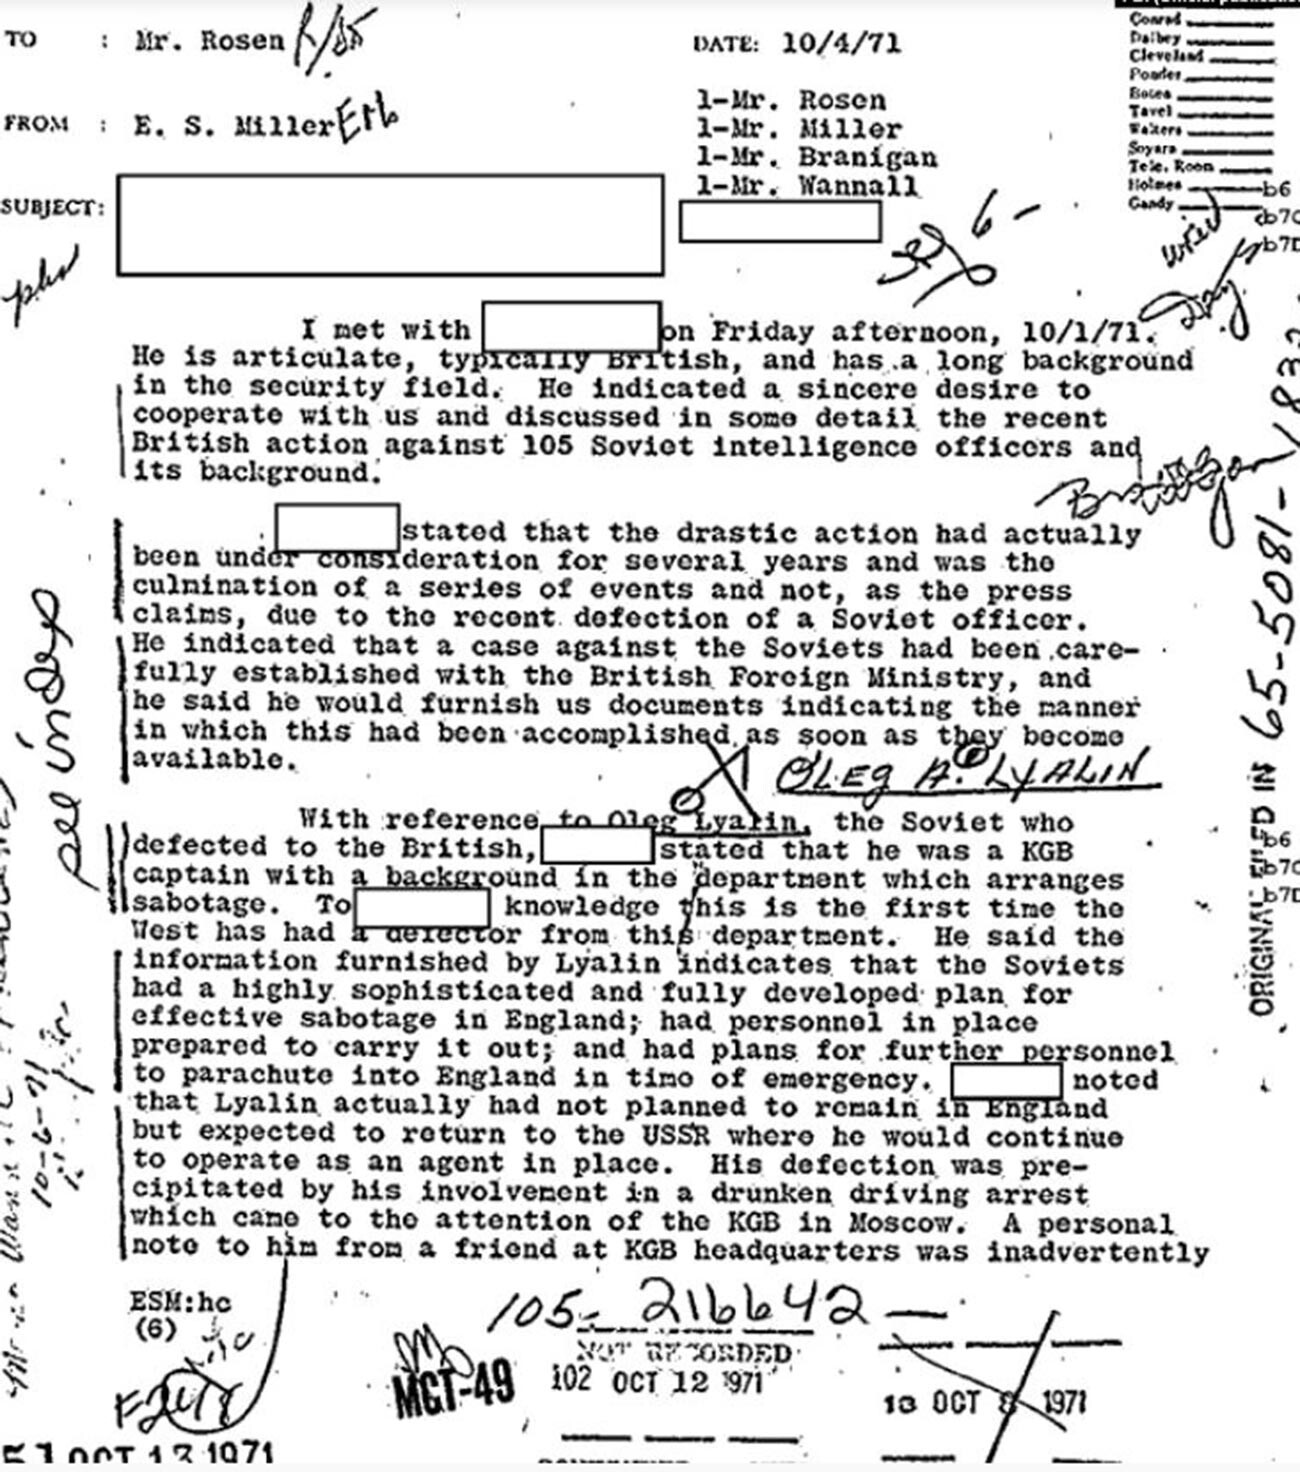 Fragmento del 'Caso de Lialin' en la correspondencia interna del FBI.